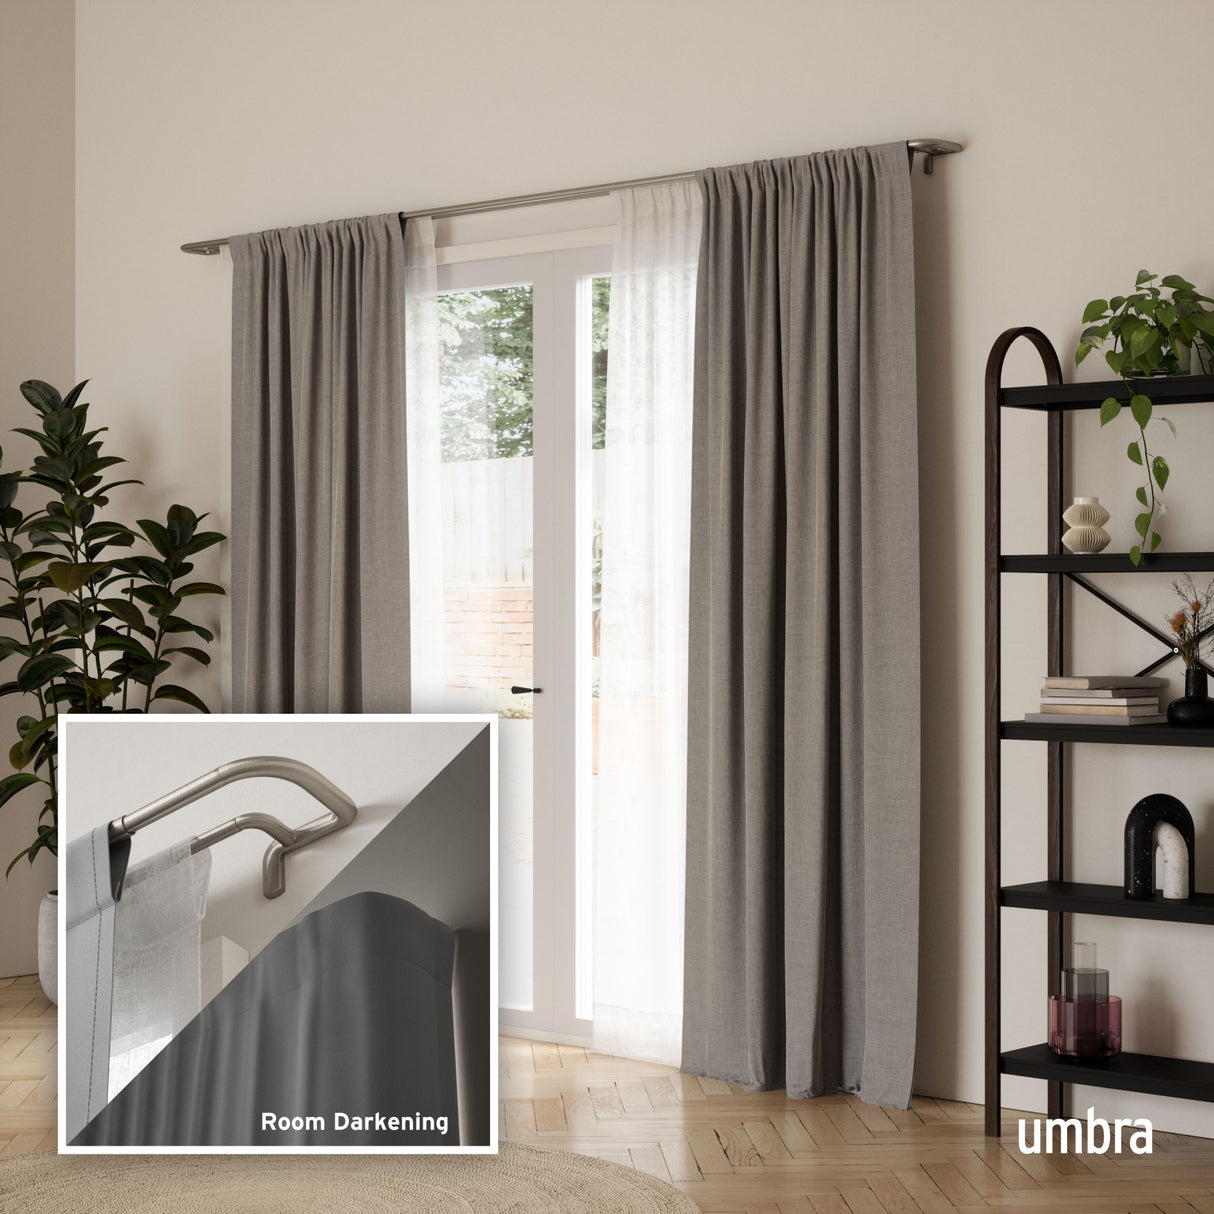 Double Curtain Rods | color: Matte-Nickel | size: 88-144" (224-366 cm) | diameter: 3/4" (1.9 cm)